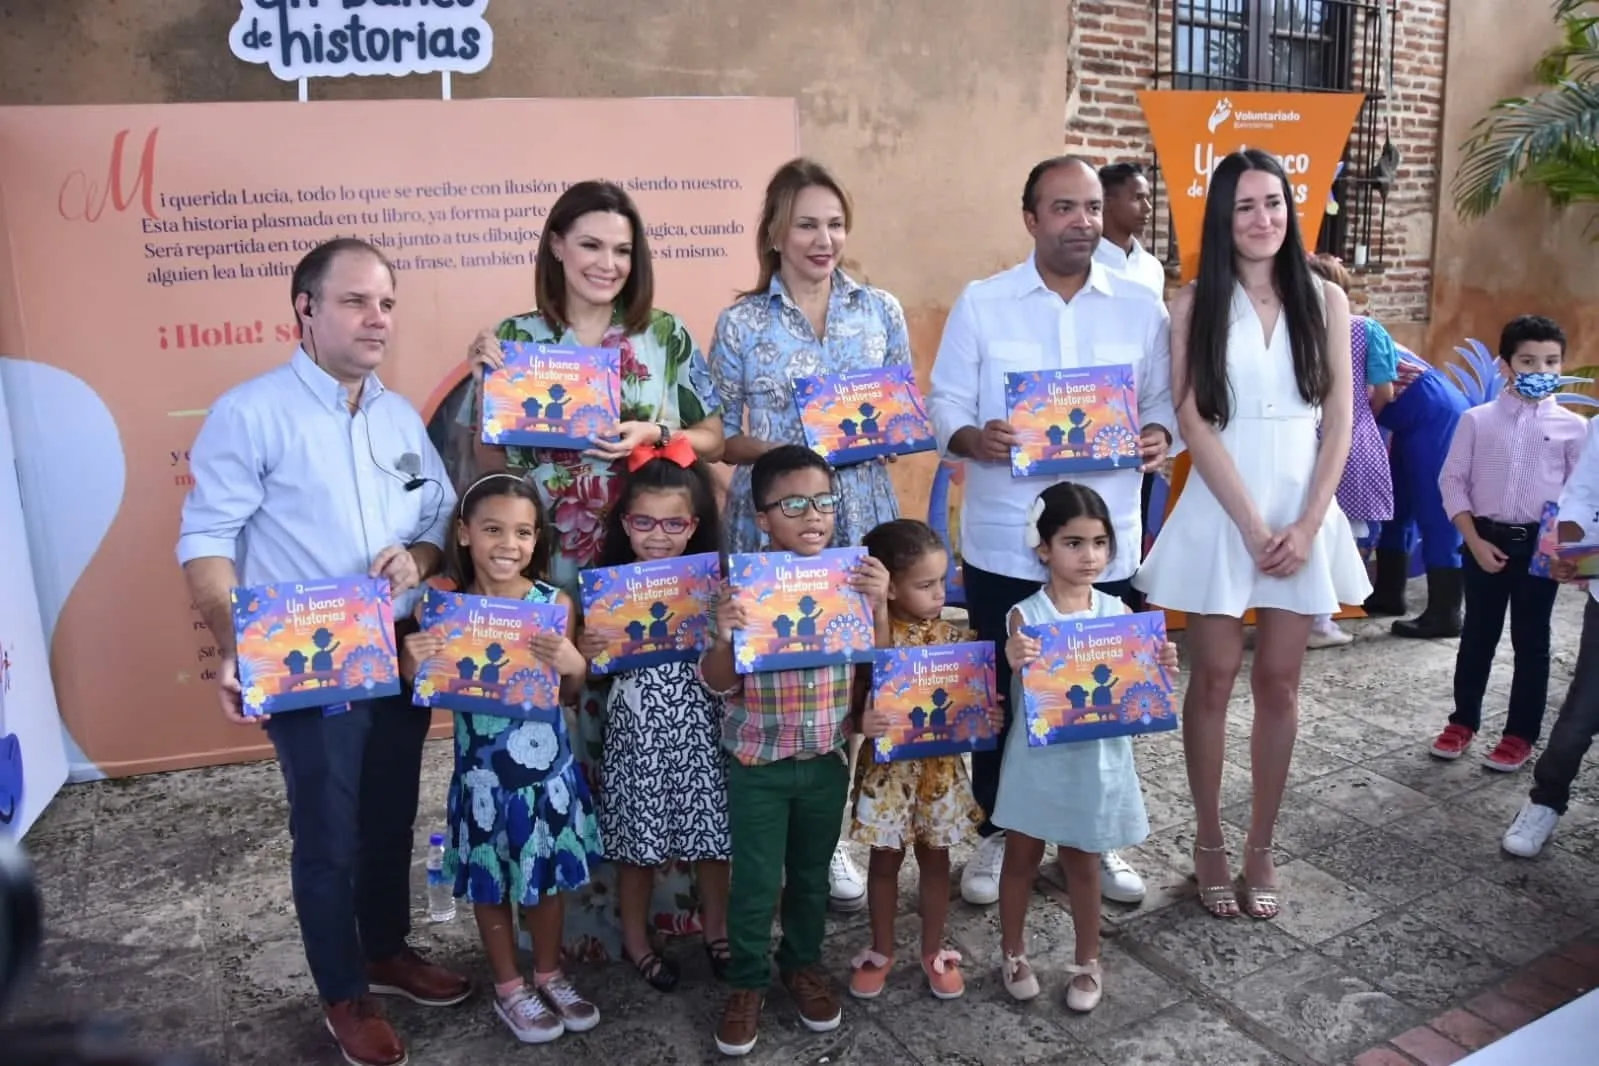 Voluntariado Banreservas presenta libro infantil “Un banco de historias”